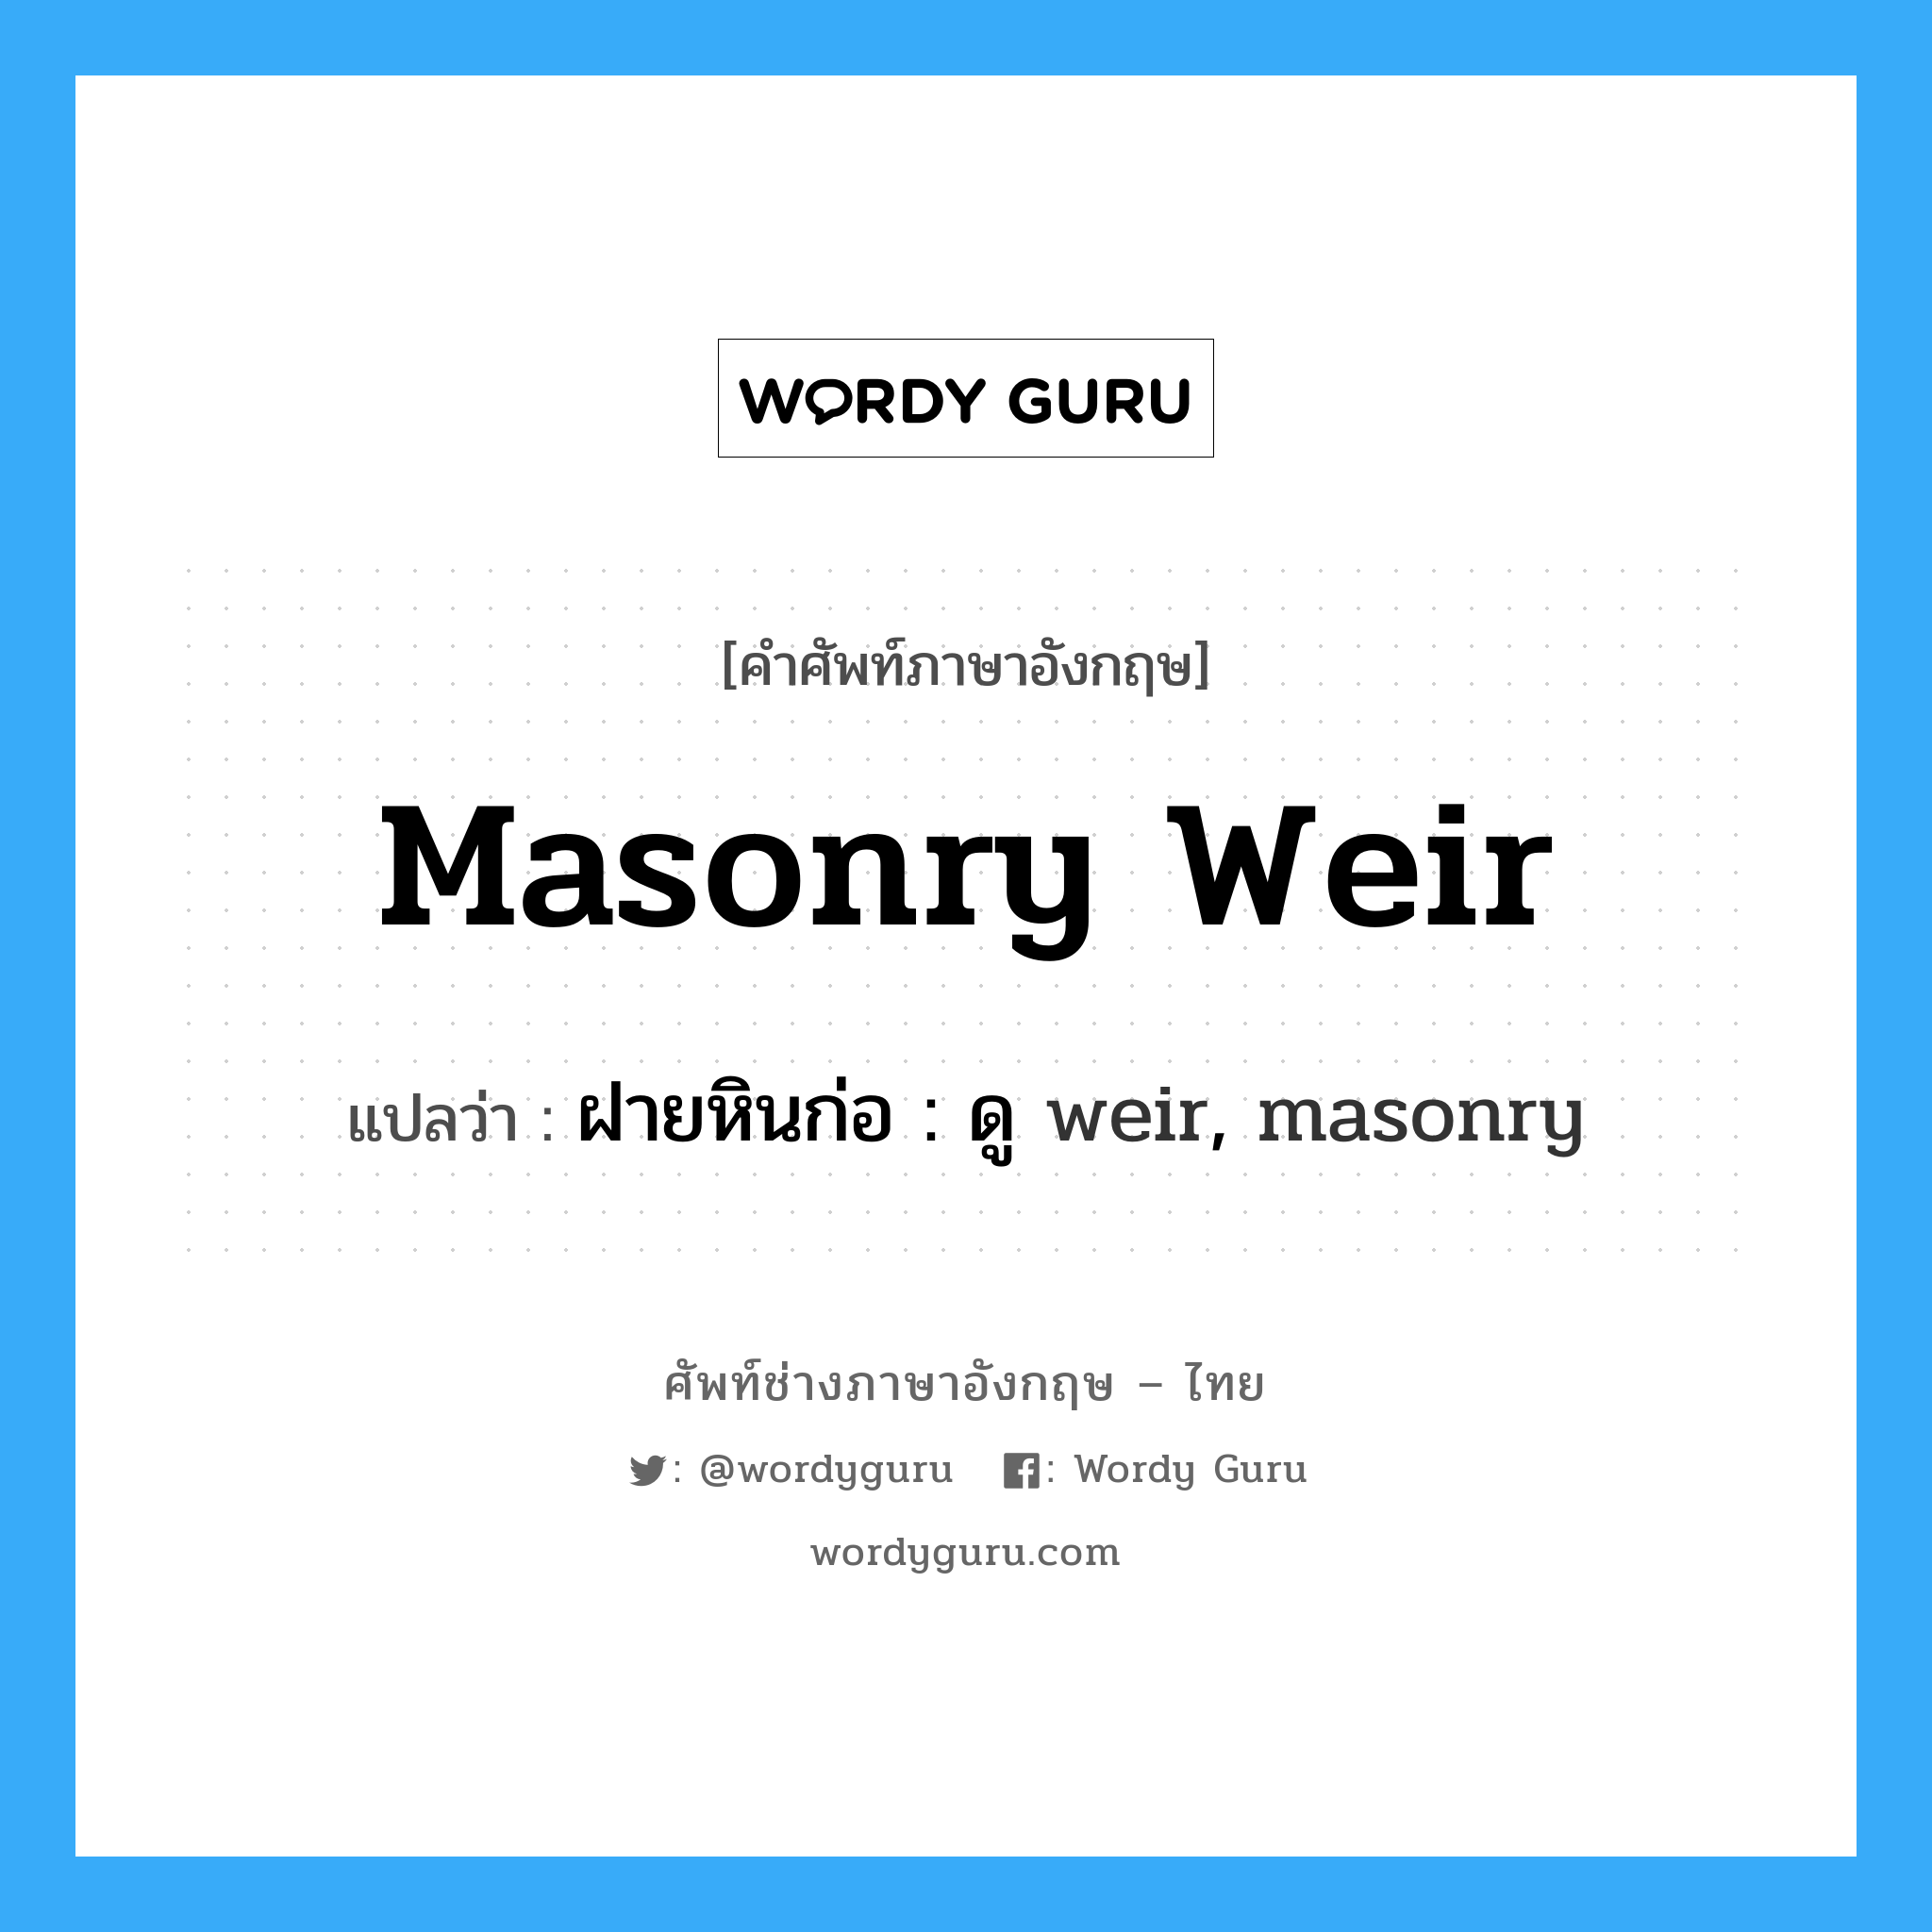 ฝายหินก่อ : ดู weir, masonry ภาษาอังกฤษ?, คำศัพท์ช่างภาษาอังกฤษ - ไทย ฝายหินก่อ : ดู weir, masonry คำศัพท์ภาษาอังกฤษ ฝายหินก่อ : ดู weir, masonry แปลว่า masonry weir